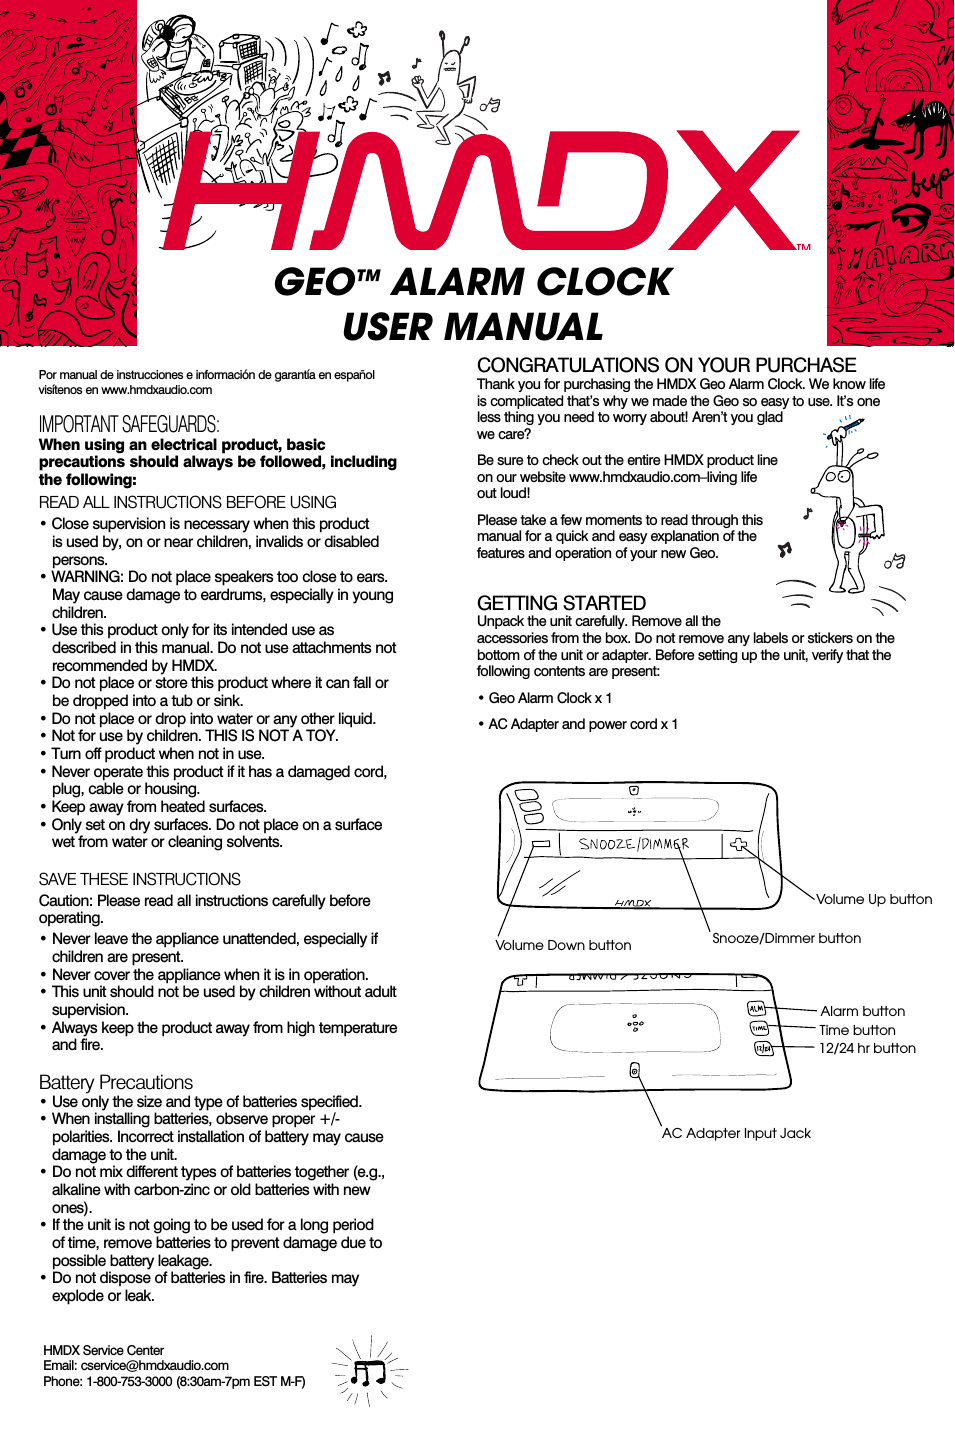 Geo™ Alarm Clock EN